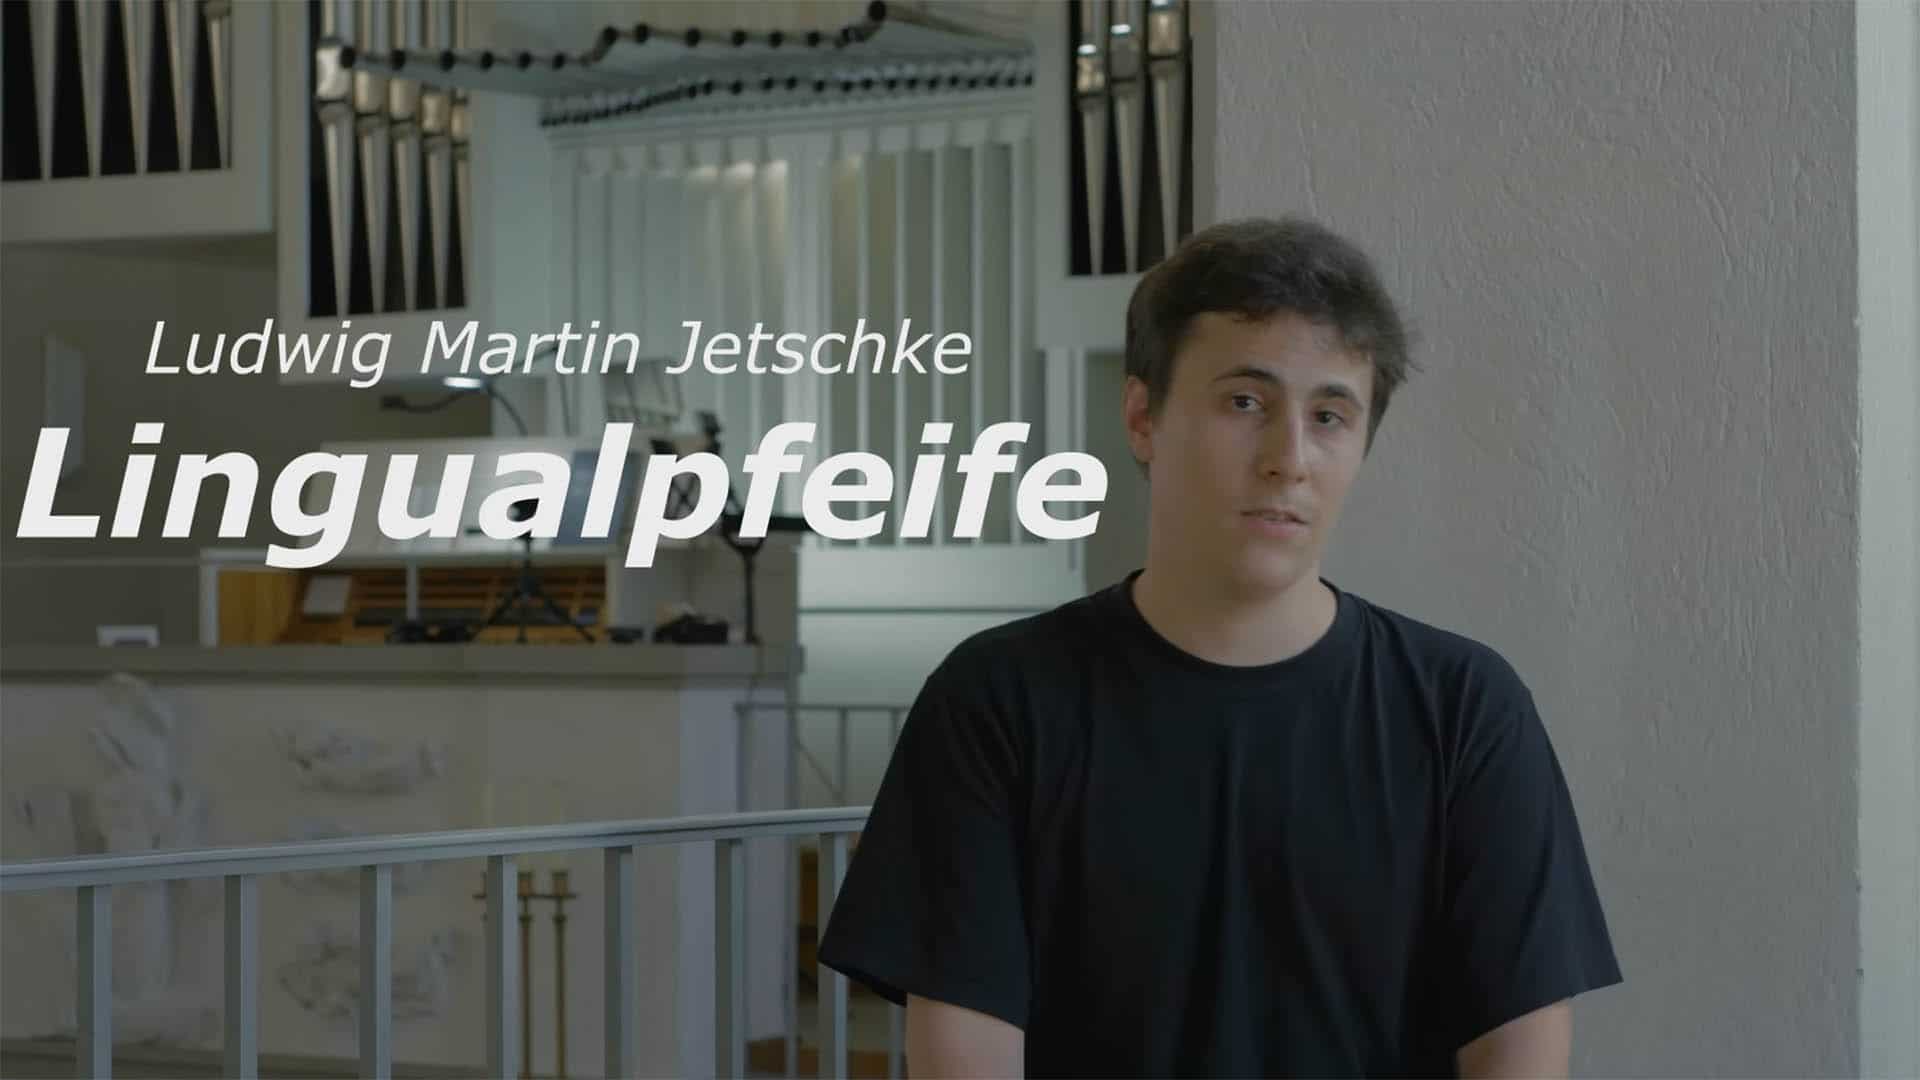 Der YouTuber Ludwig Martin Jetschke vom Kanal Lingualpfeife beschäftigt sich mit dem Thema „digitale Kirche“